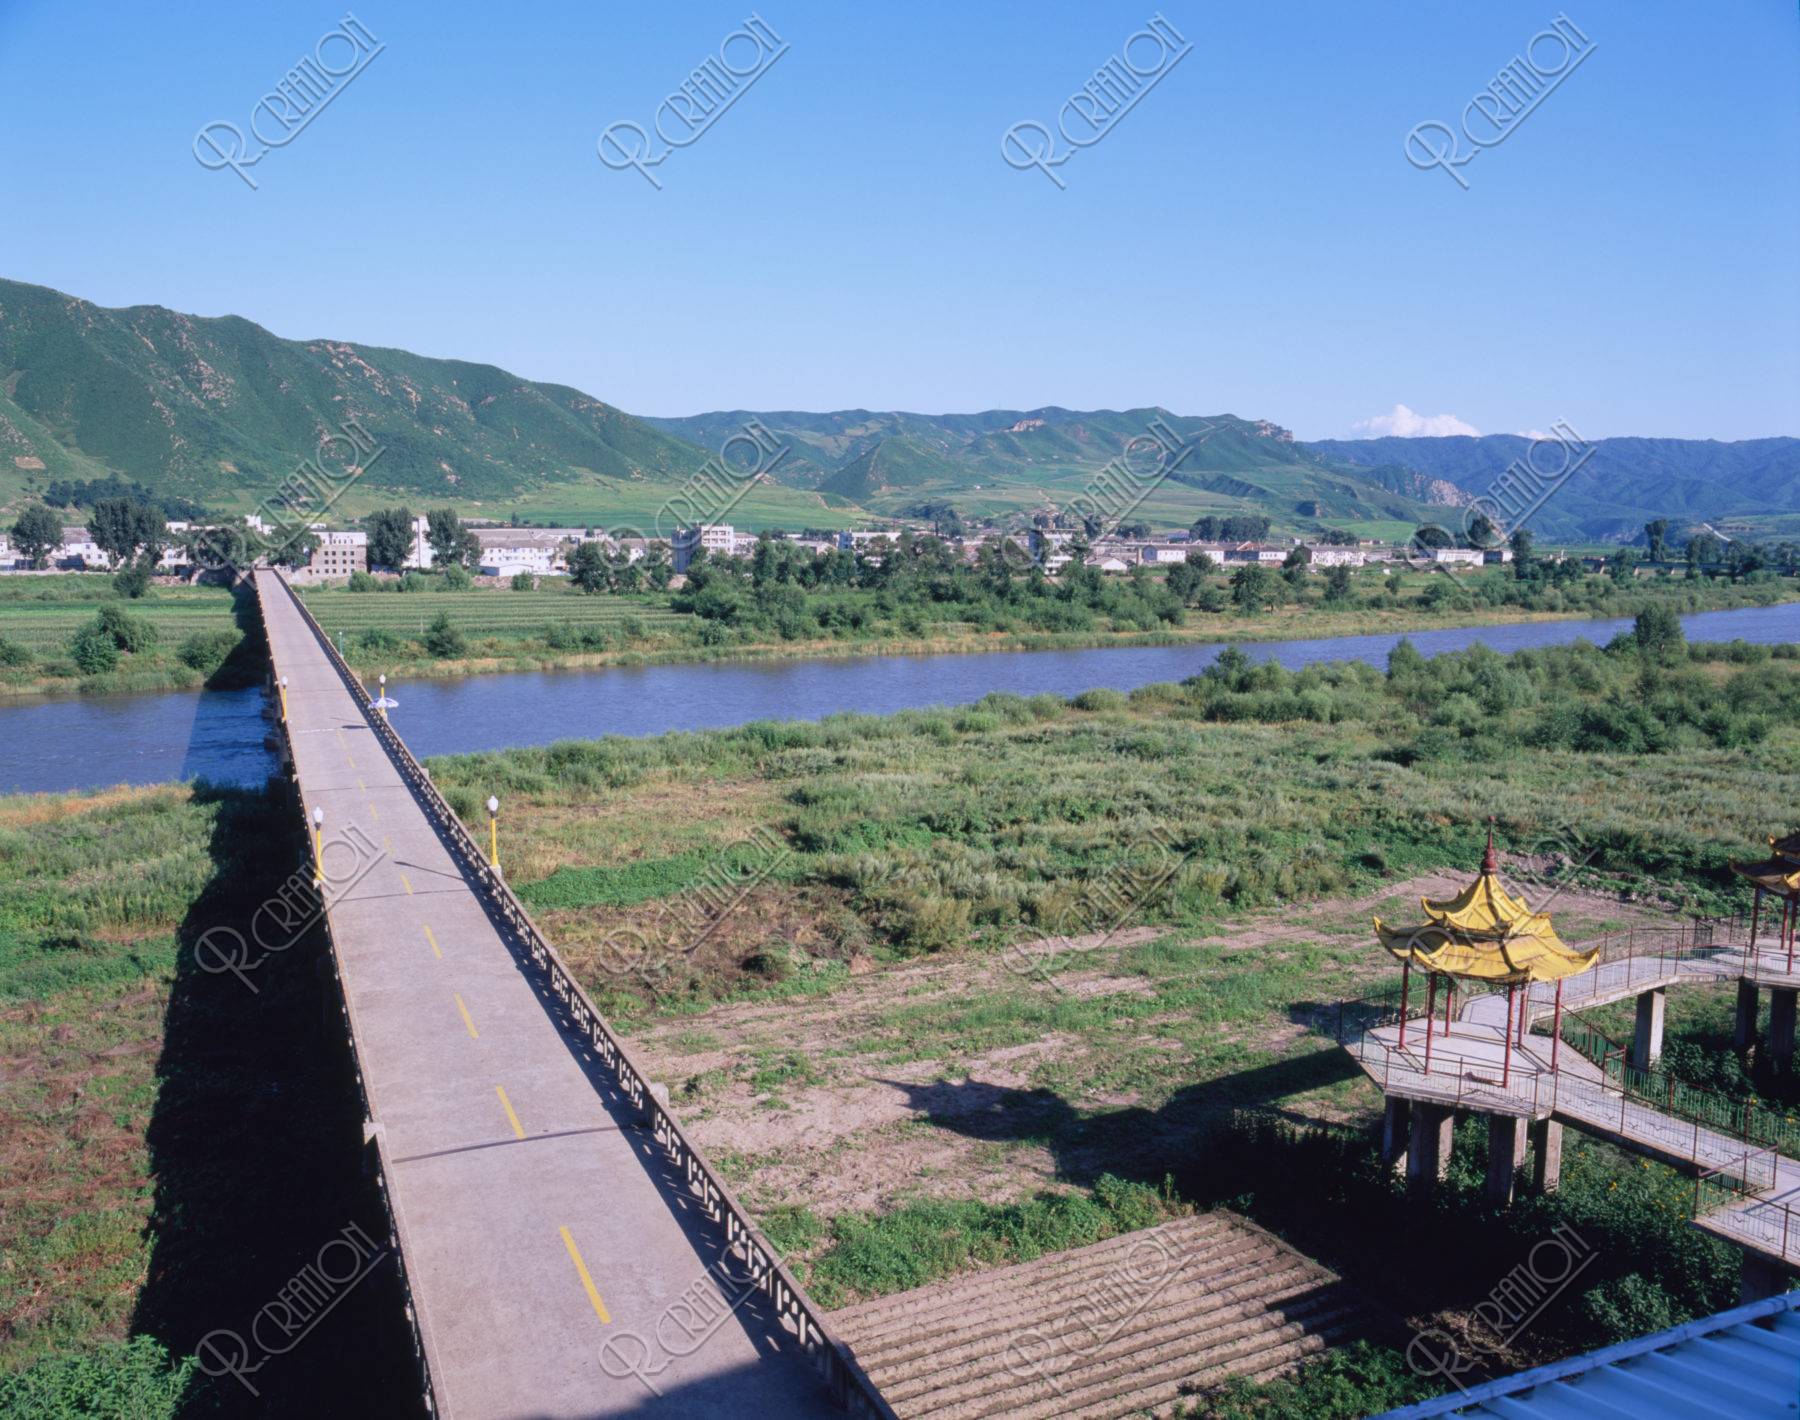 図們市 図們江大橋 対岸北朝鮮